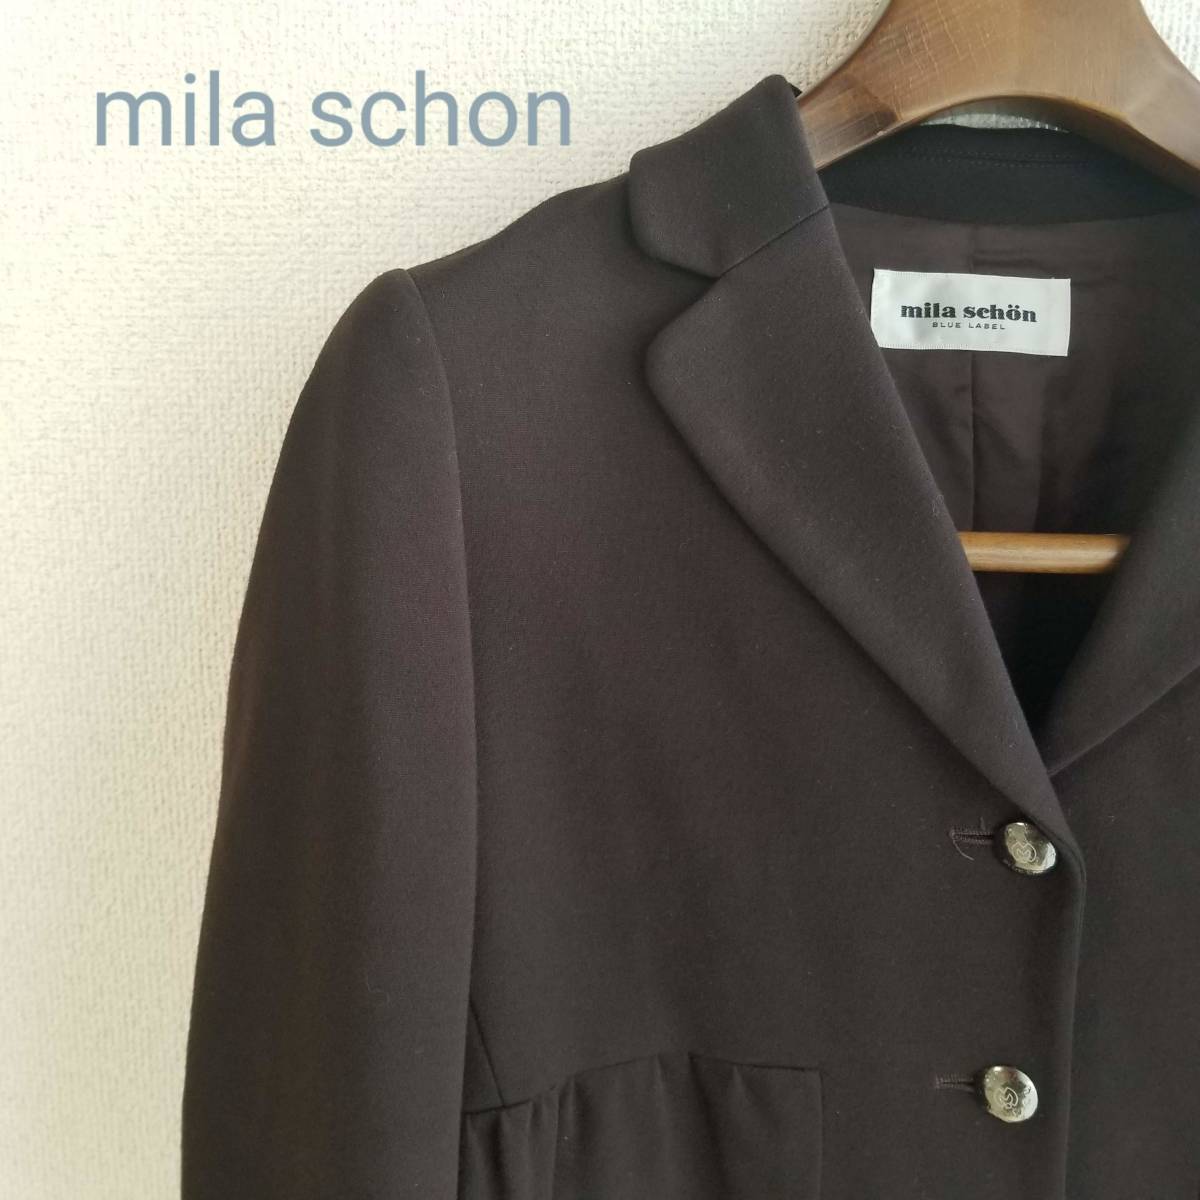 Mila Schoen ミラ ショーン ジャケット アウター ポケット ロゴボタン 裏地あり フェミニン 無地 ベーシック ブラウン サイズ42 xm82_画像1